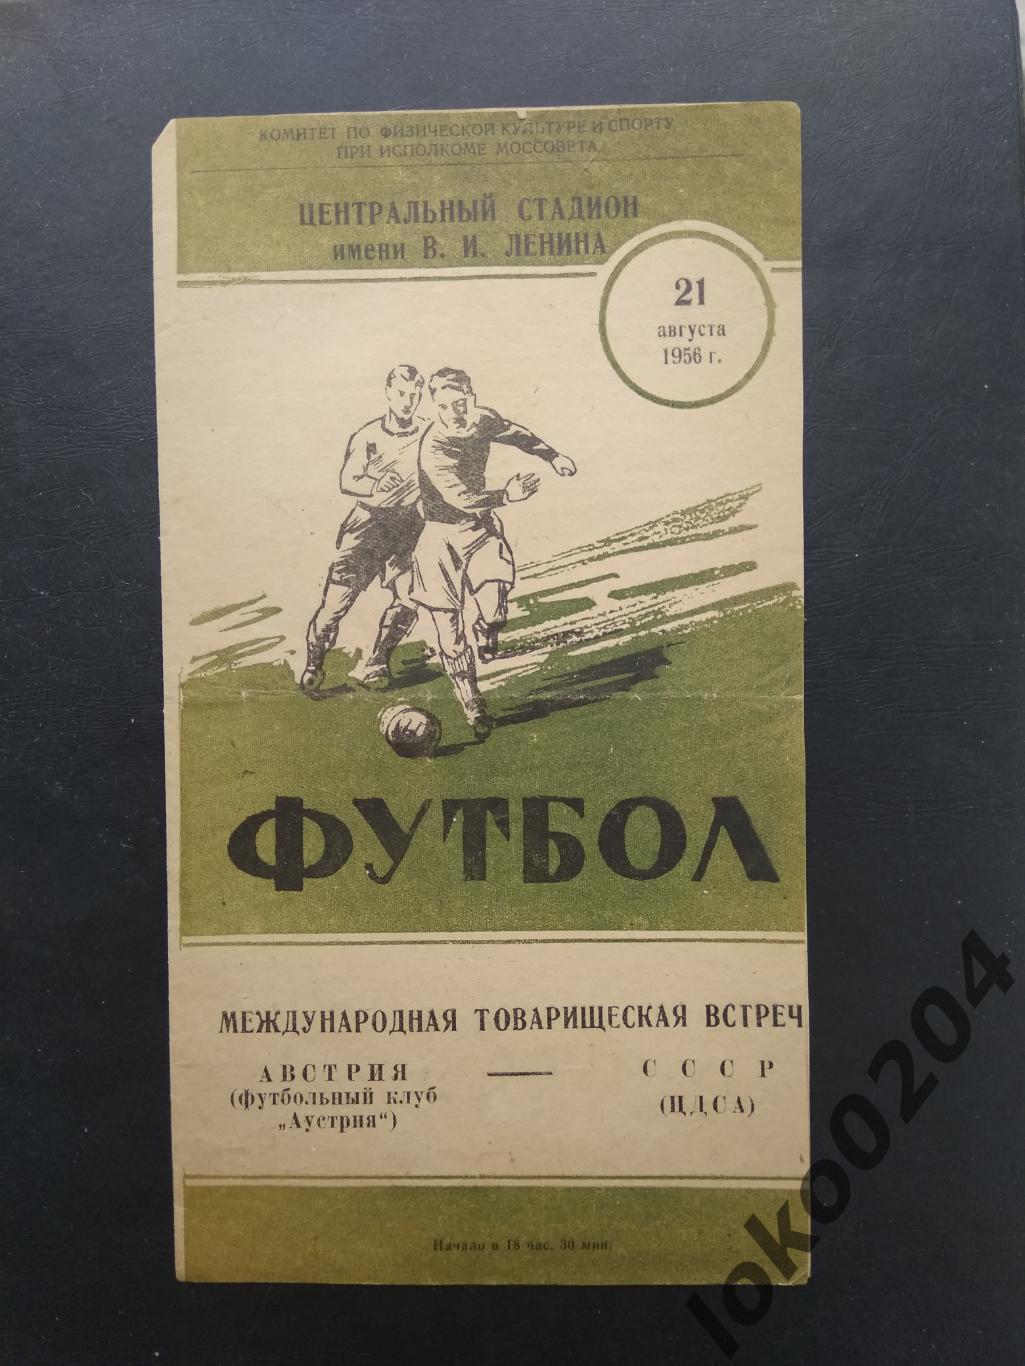 ЦДСА Москва - ФК Аустрия (Австрия) , товарищеский матч, 1956. 1